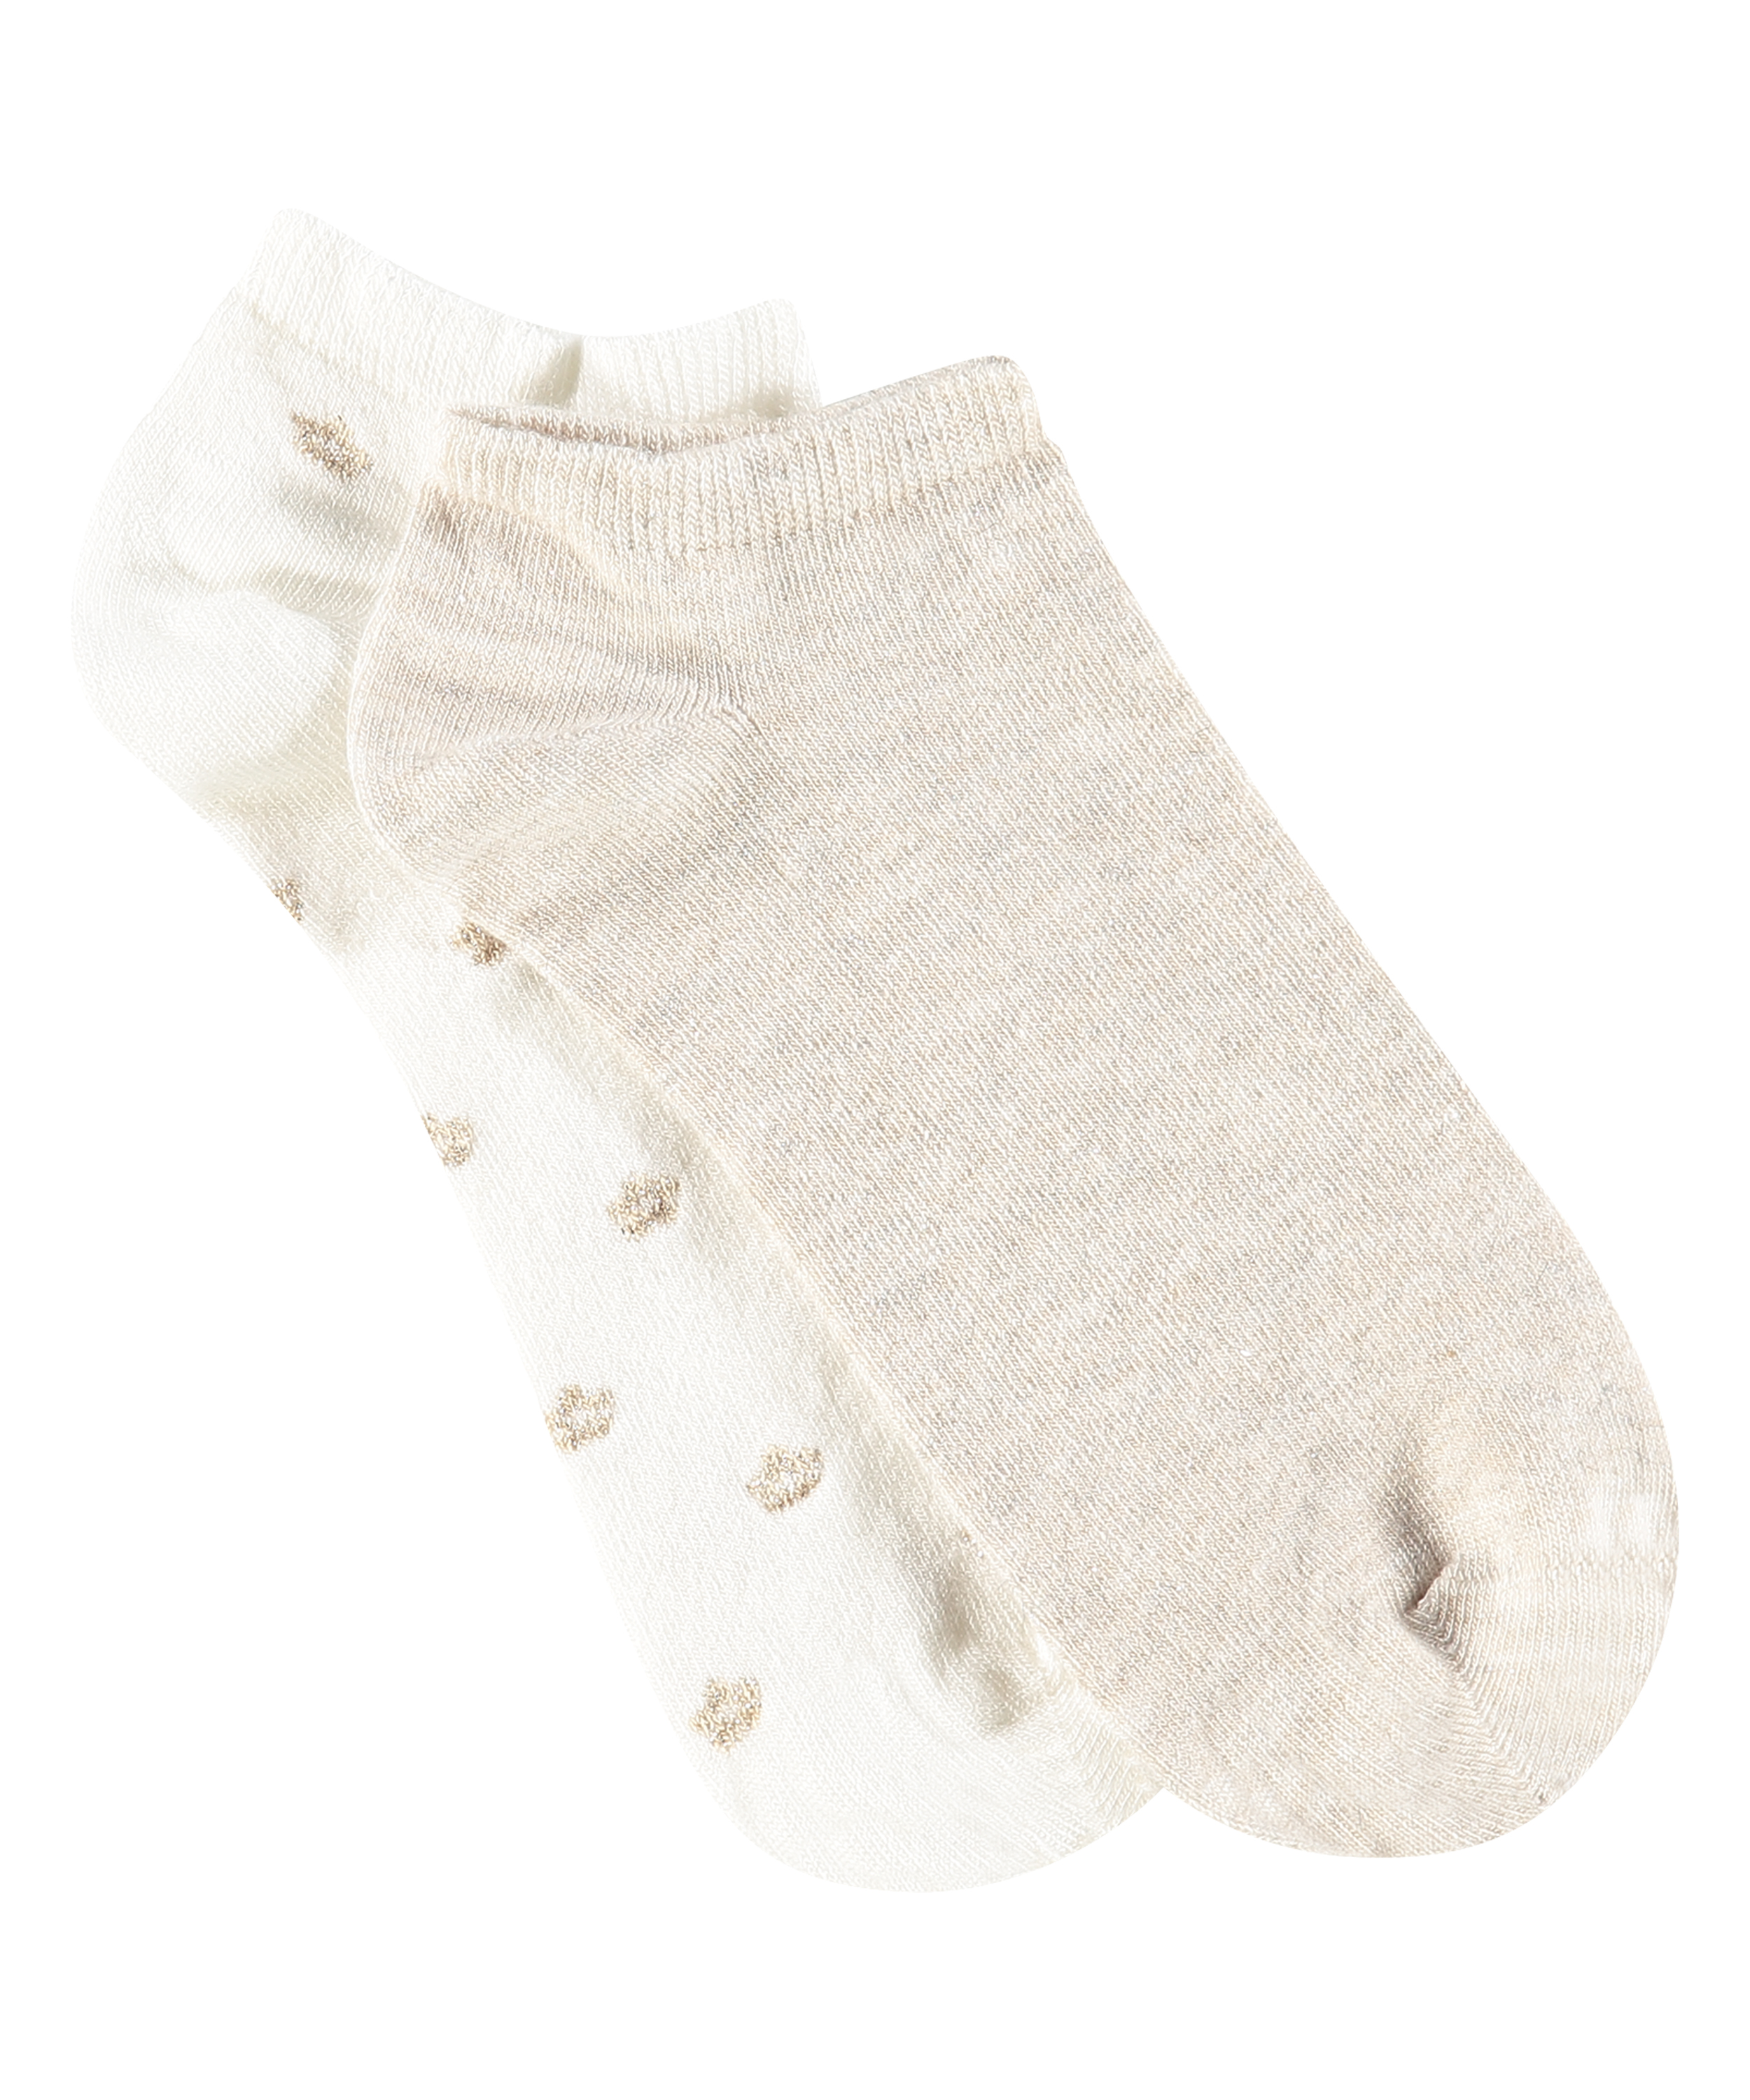 2 Paar  Lurex-Socken, Weiß, main